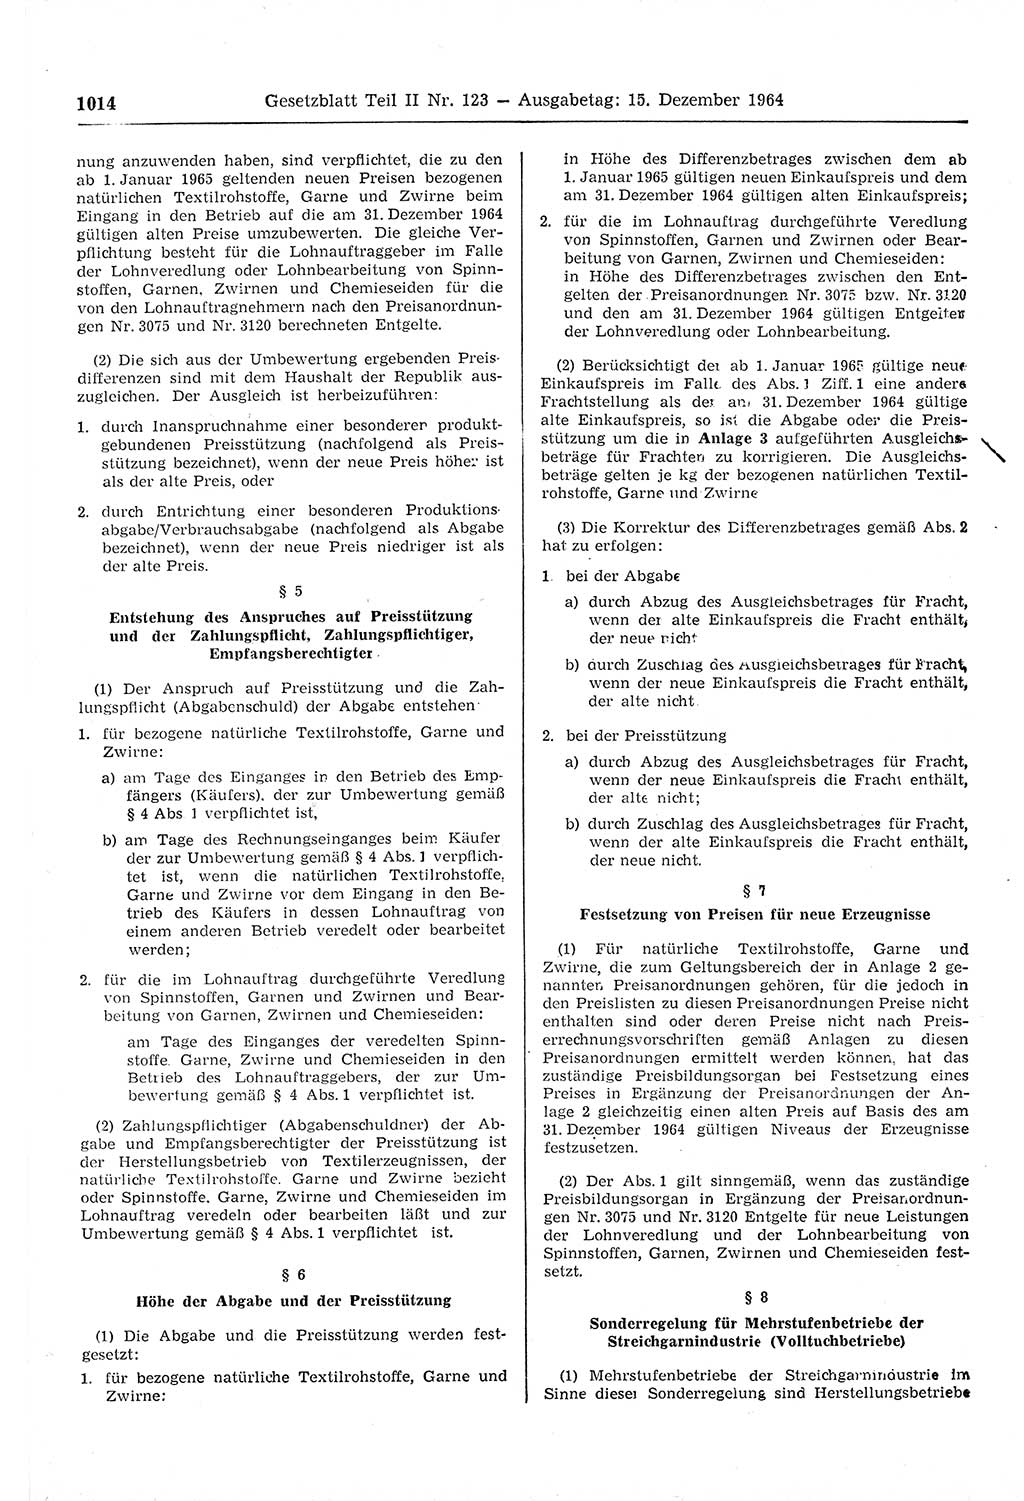 Gesetzblatt (GBl.) der Deutschen Demokratischen Republik (DDR) Teil ⅠⅠ 1964, Seite 1014 (GBl. DDR ⅠⅠ 1964, S. 1014)